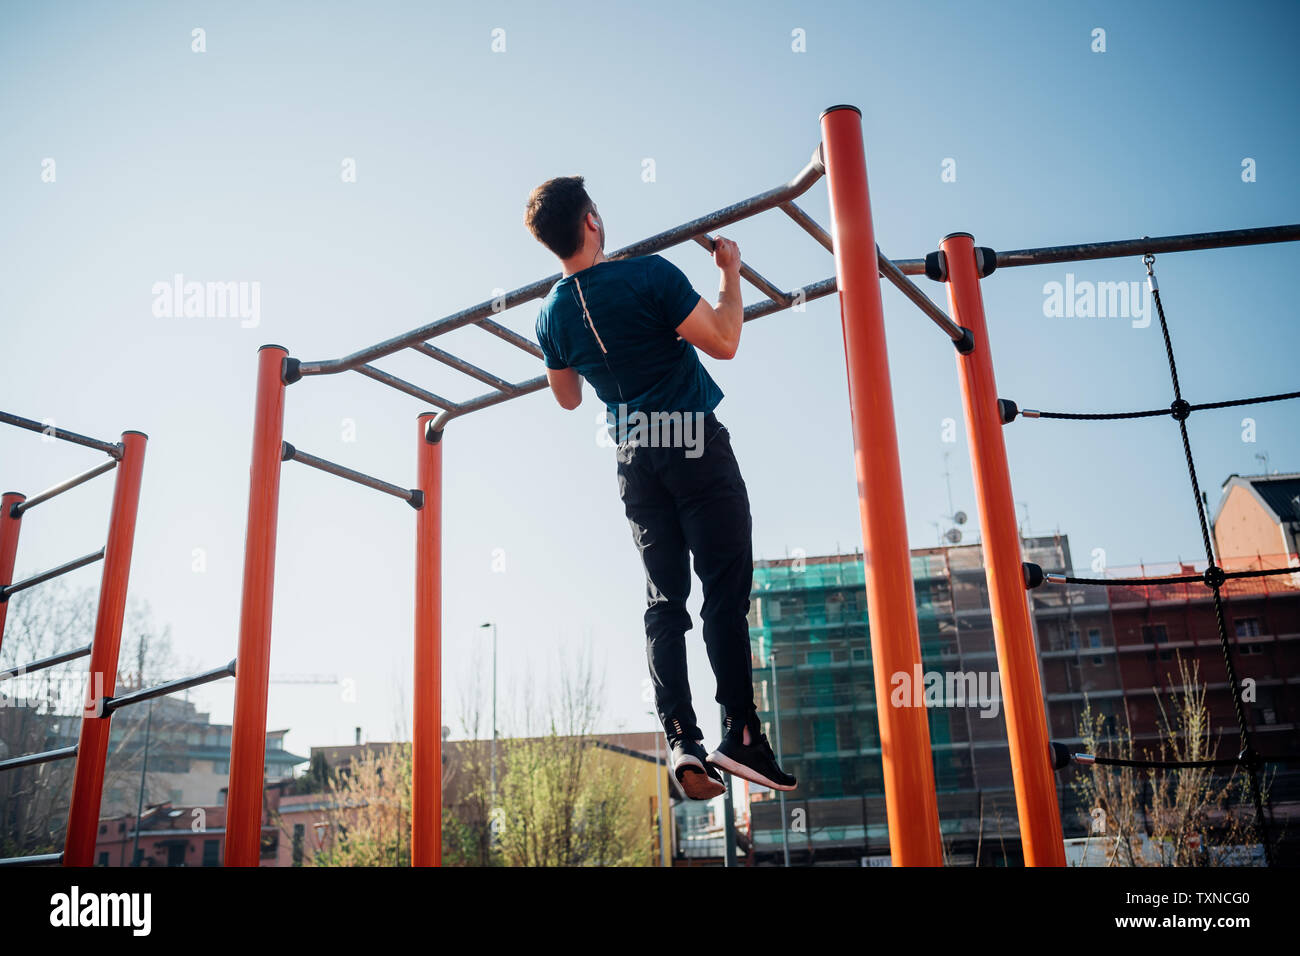 Calistenia en el gimnasio exterior, joven haciendo tirar ups en equipos de ejercicios, vista trasera Foto de stock